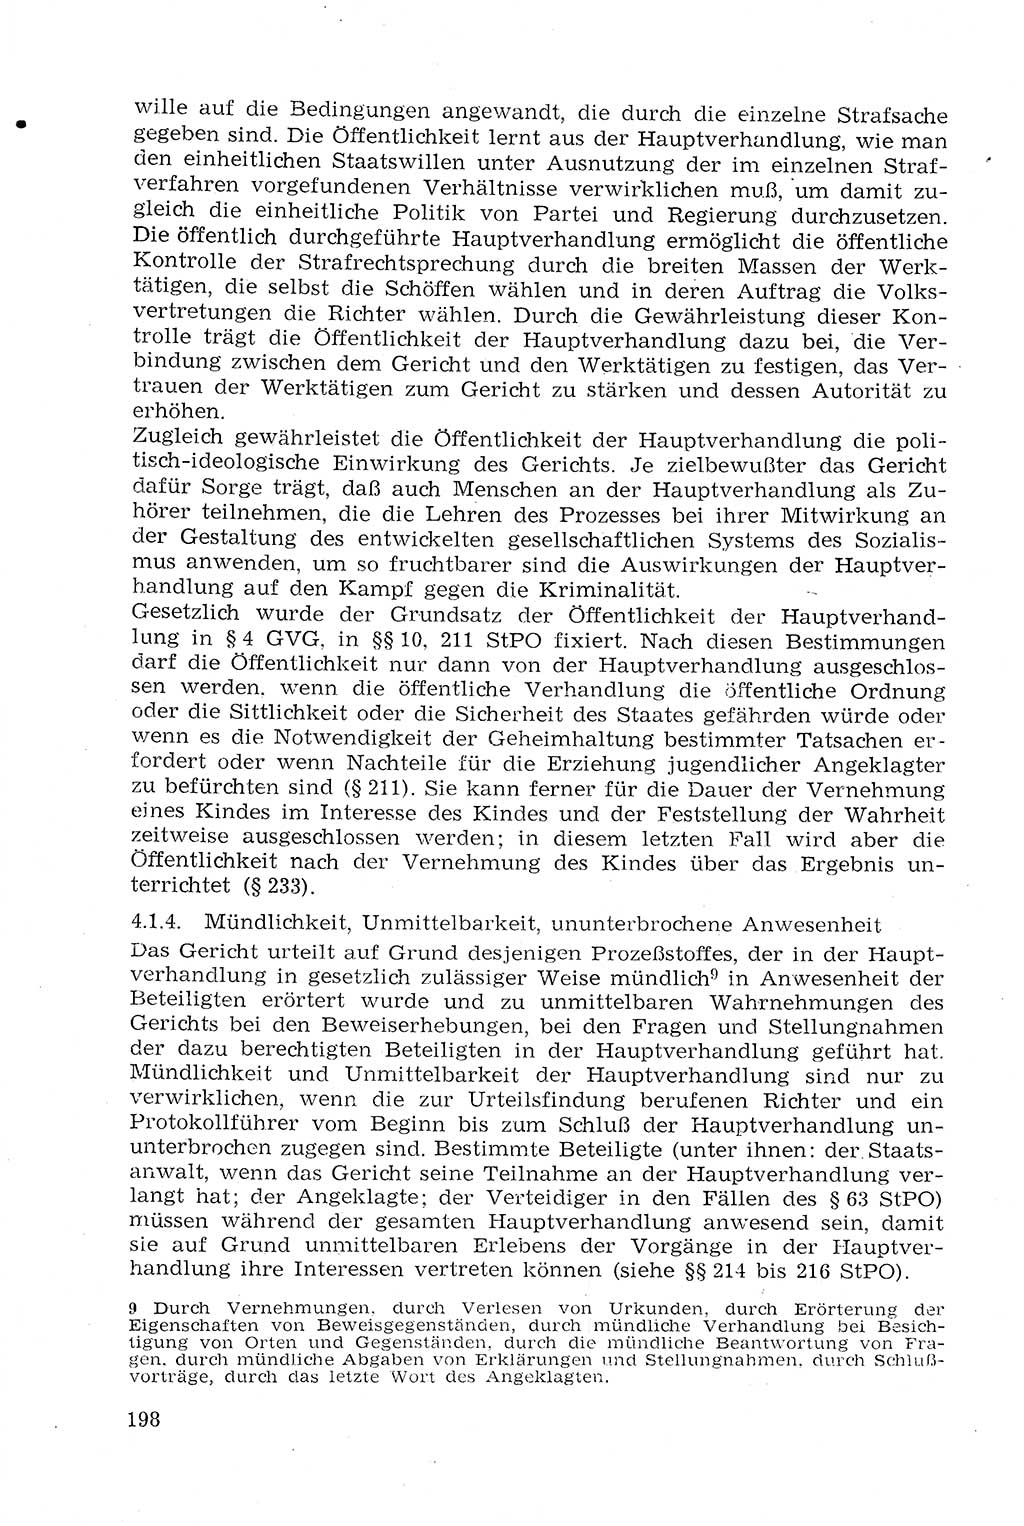 Strafprozeßrecht der DDR (Deutsche Demokratische Republik), Lehrmaterial 1969, Seite 198 (Strafprozeßr. DDR Lehrmat. 1969, S. 198)